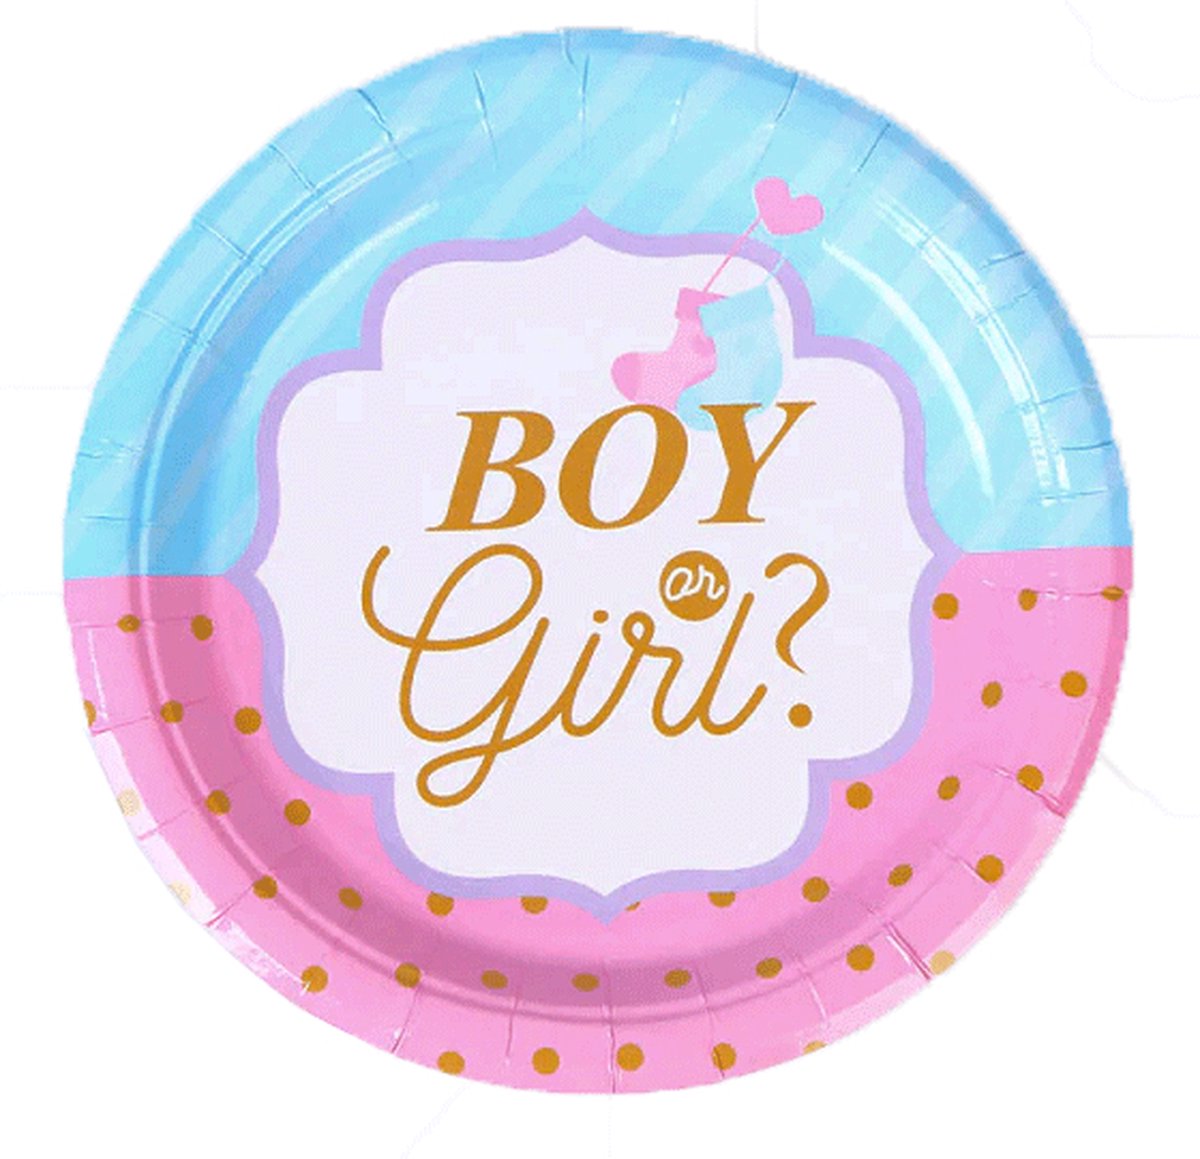 Kartonnen Bordjes Boy or girl 18 cm 8 st - Wegwerp borden - Feest/verjaardag/BBQ borden - onthulling geslacht - 8 x gender reveal - Babyshower /Gender Reveal